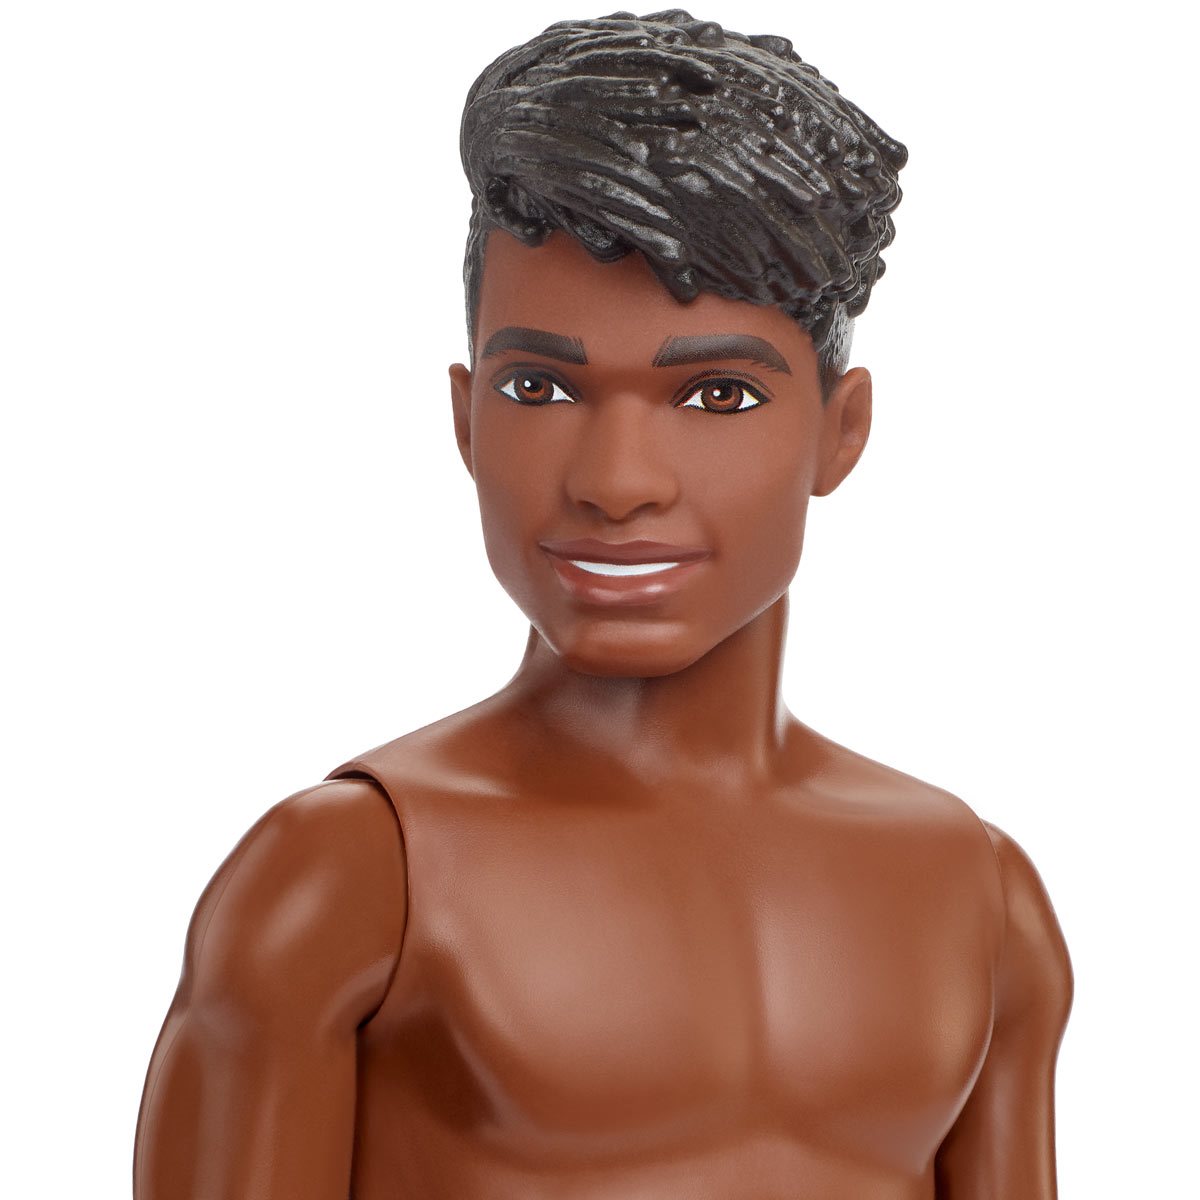 natuurlijk Ploeg valuta Barbie Ken Beach Doll with Tropical Shorts